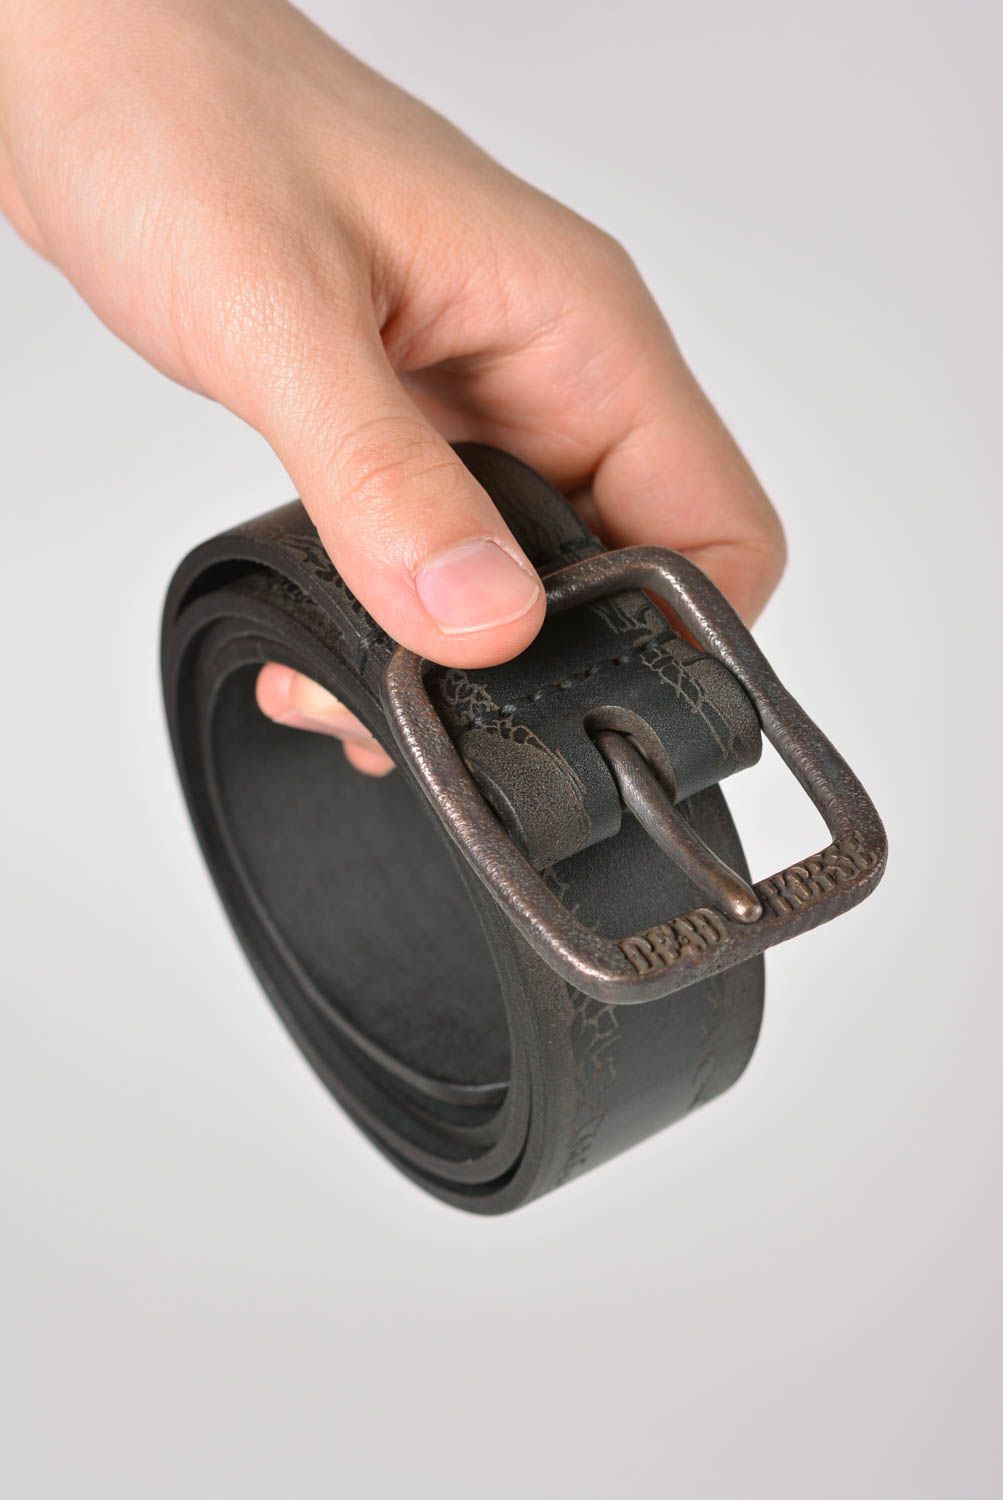 Cinturón de cuero hecho a mano estiloso ropa masculina accesorio de moda bonito foto 3